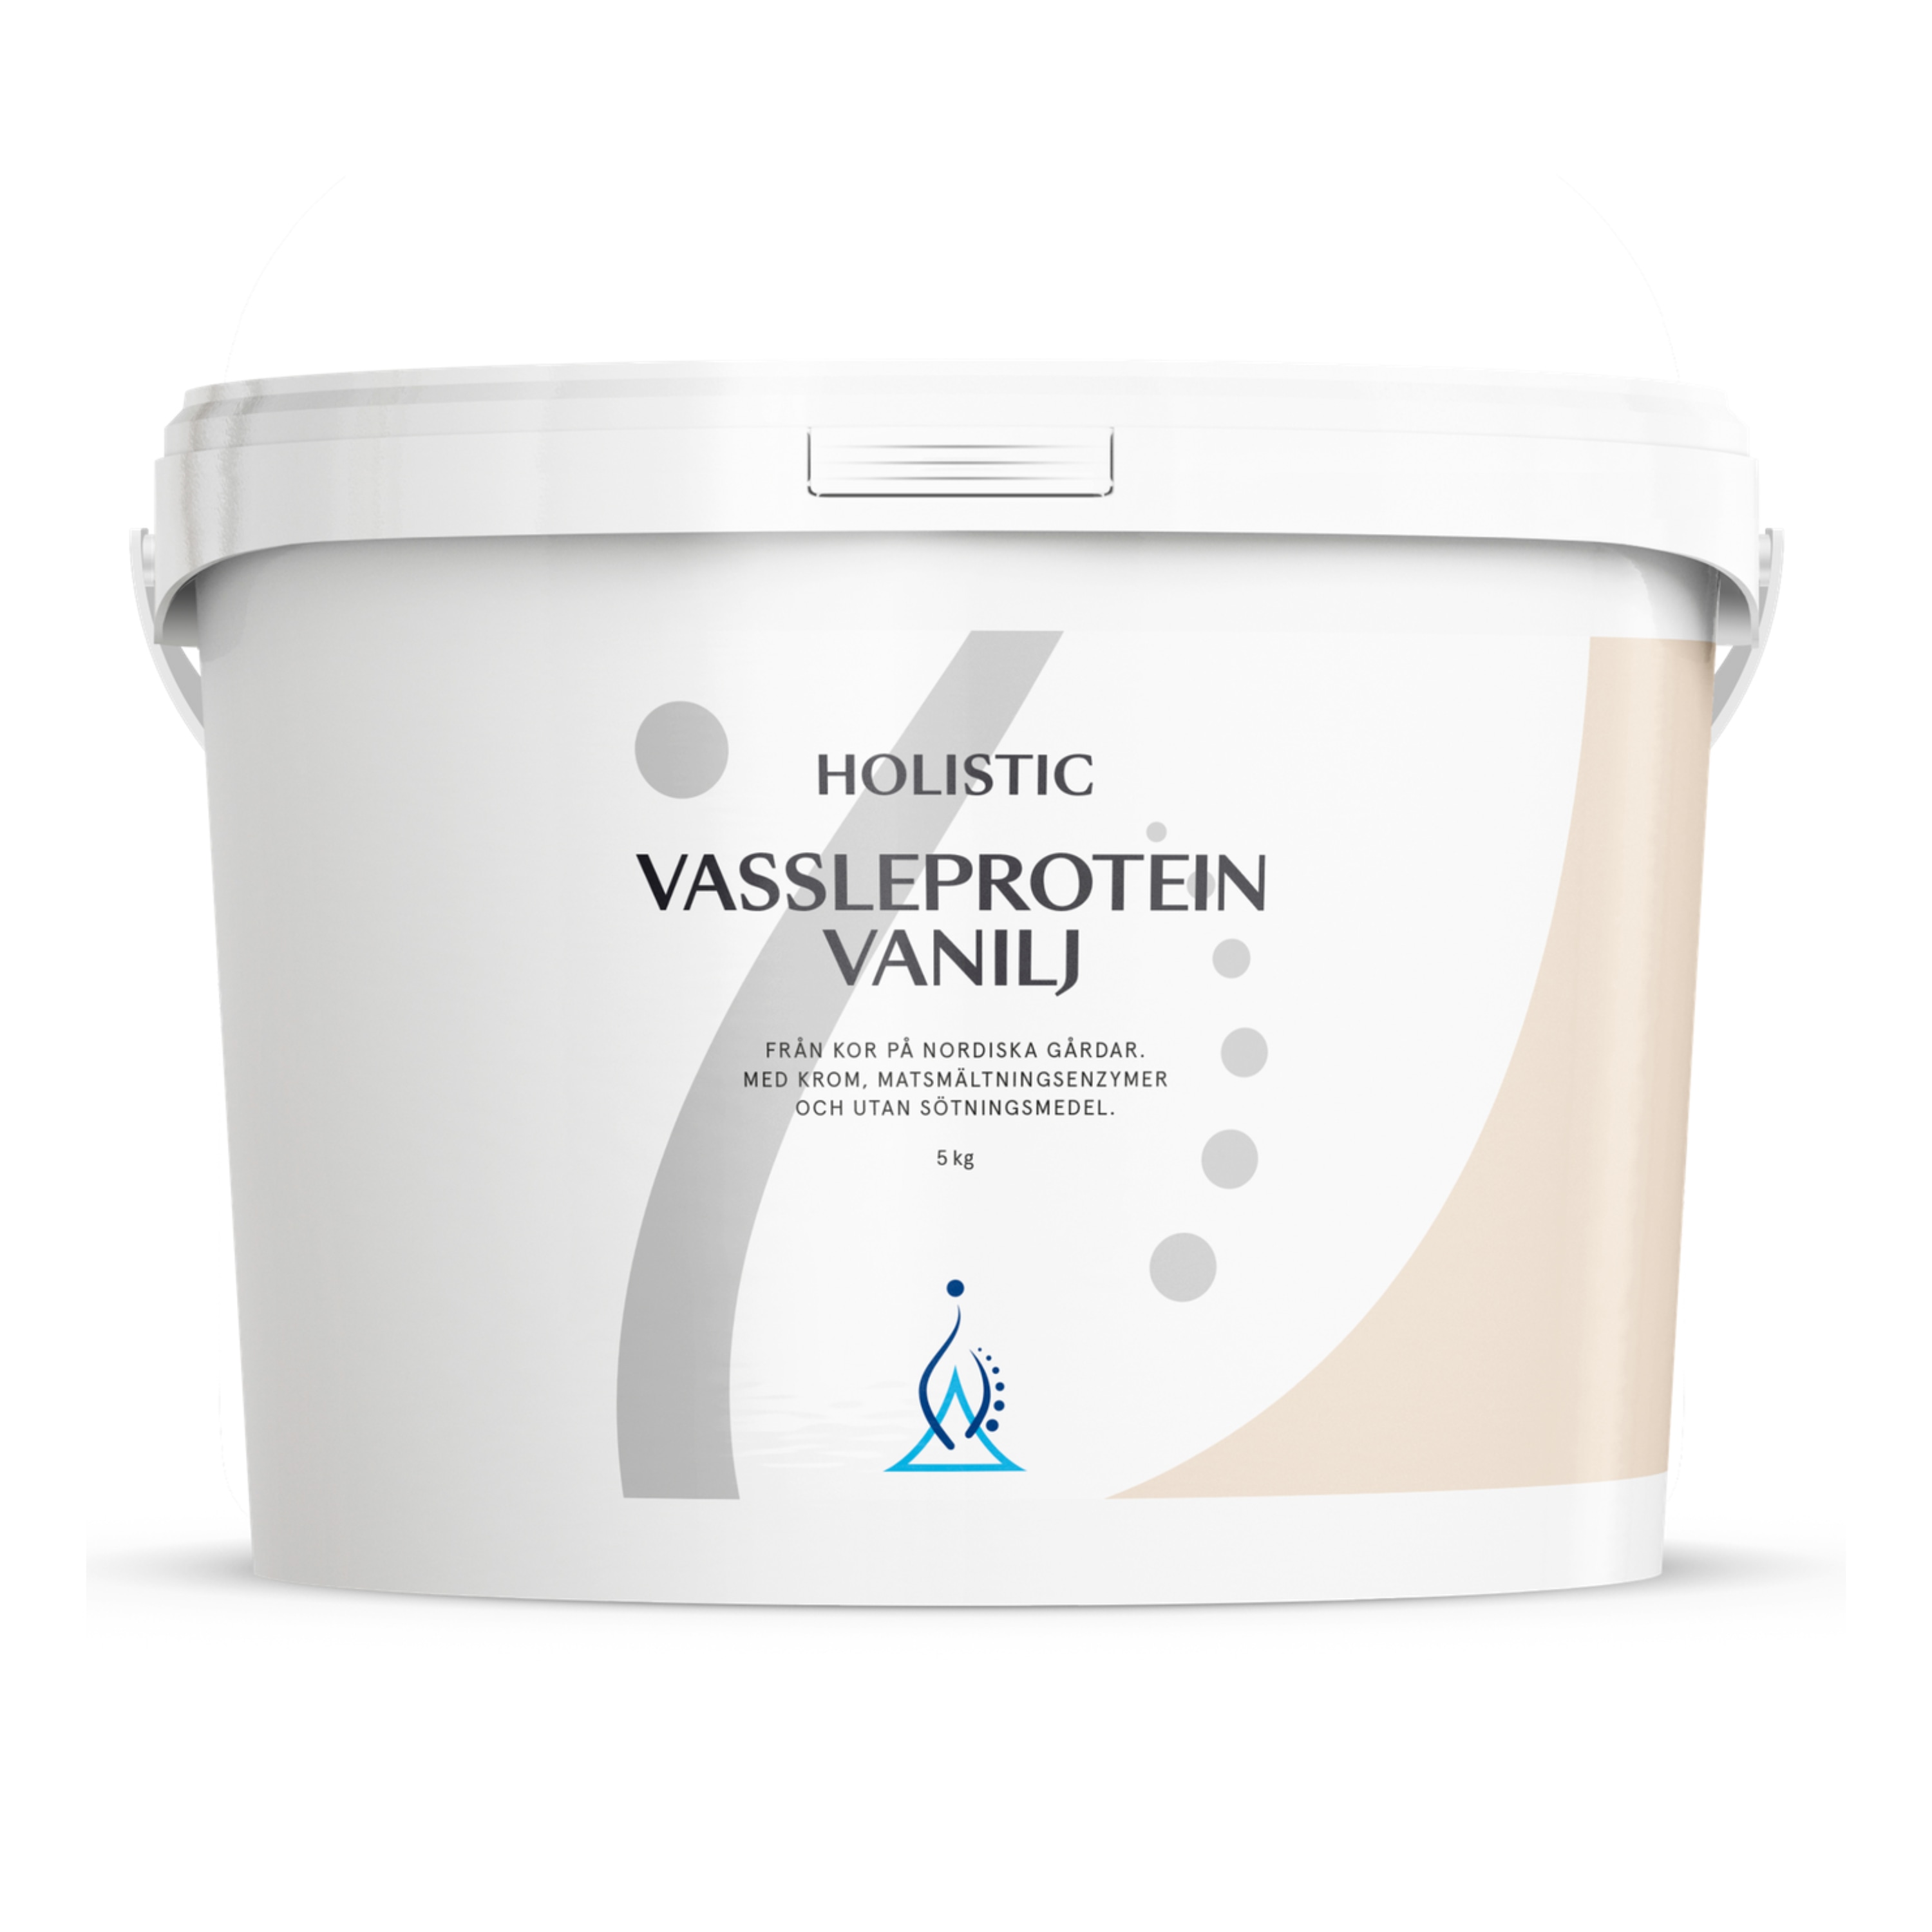 Vassleprotein Vanilj 5kg